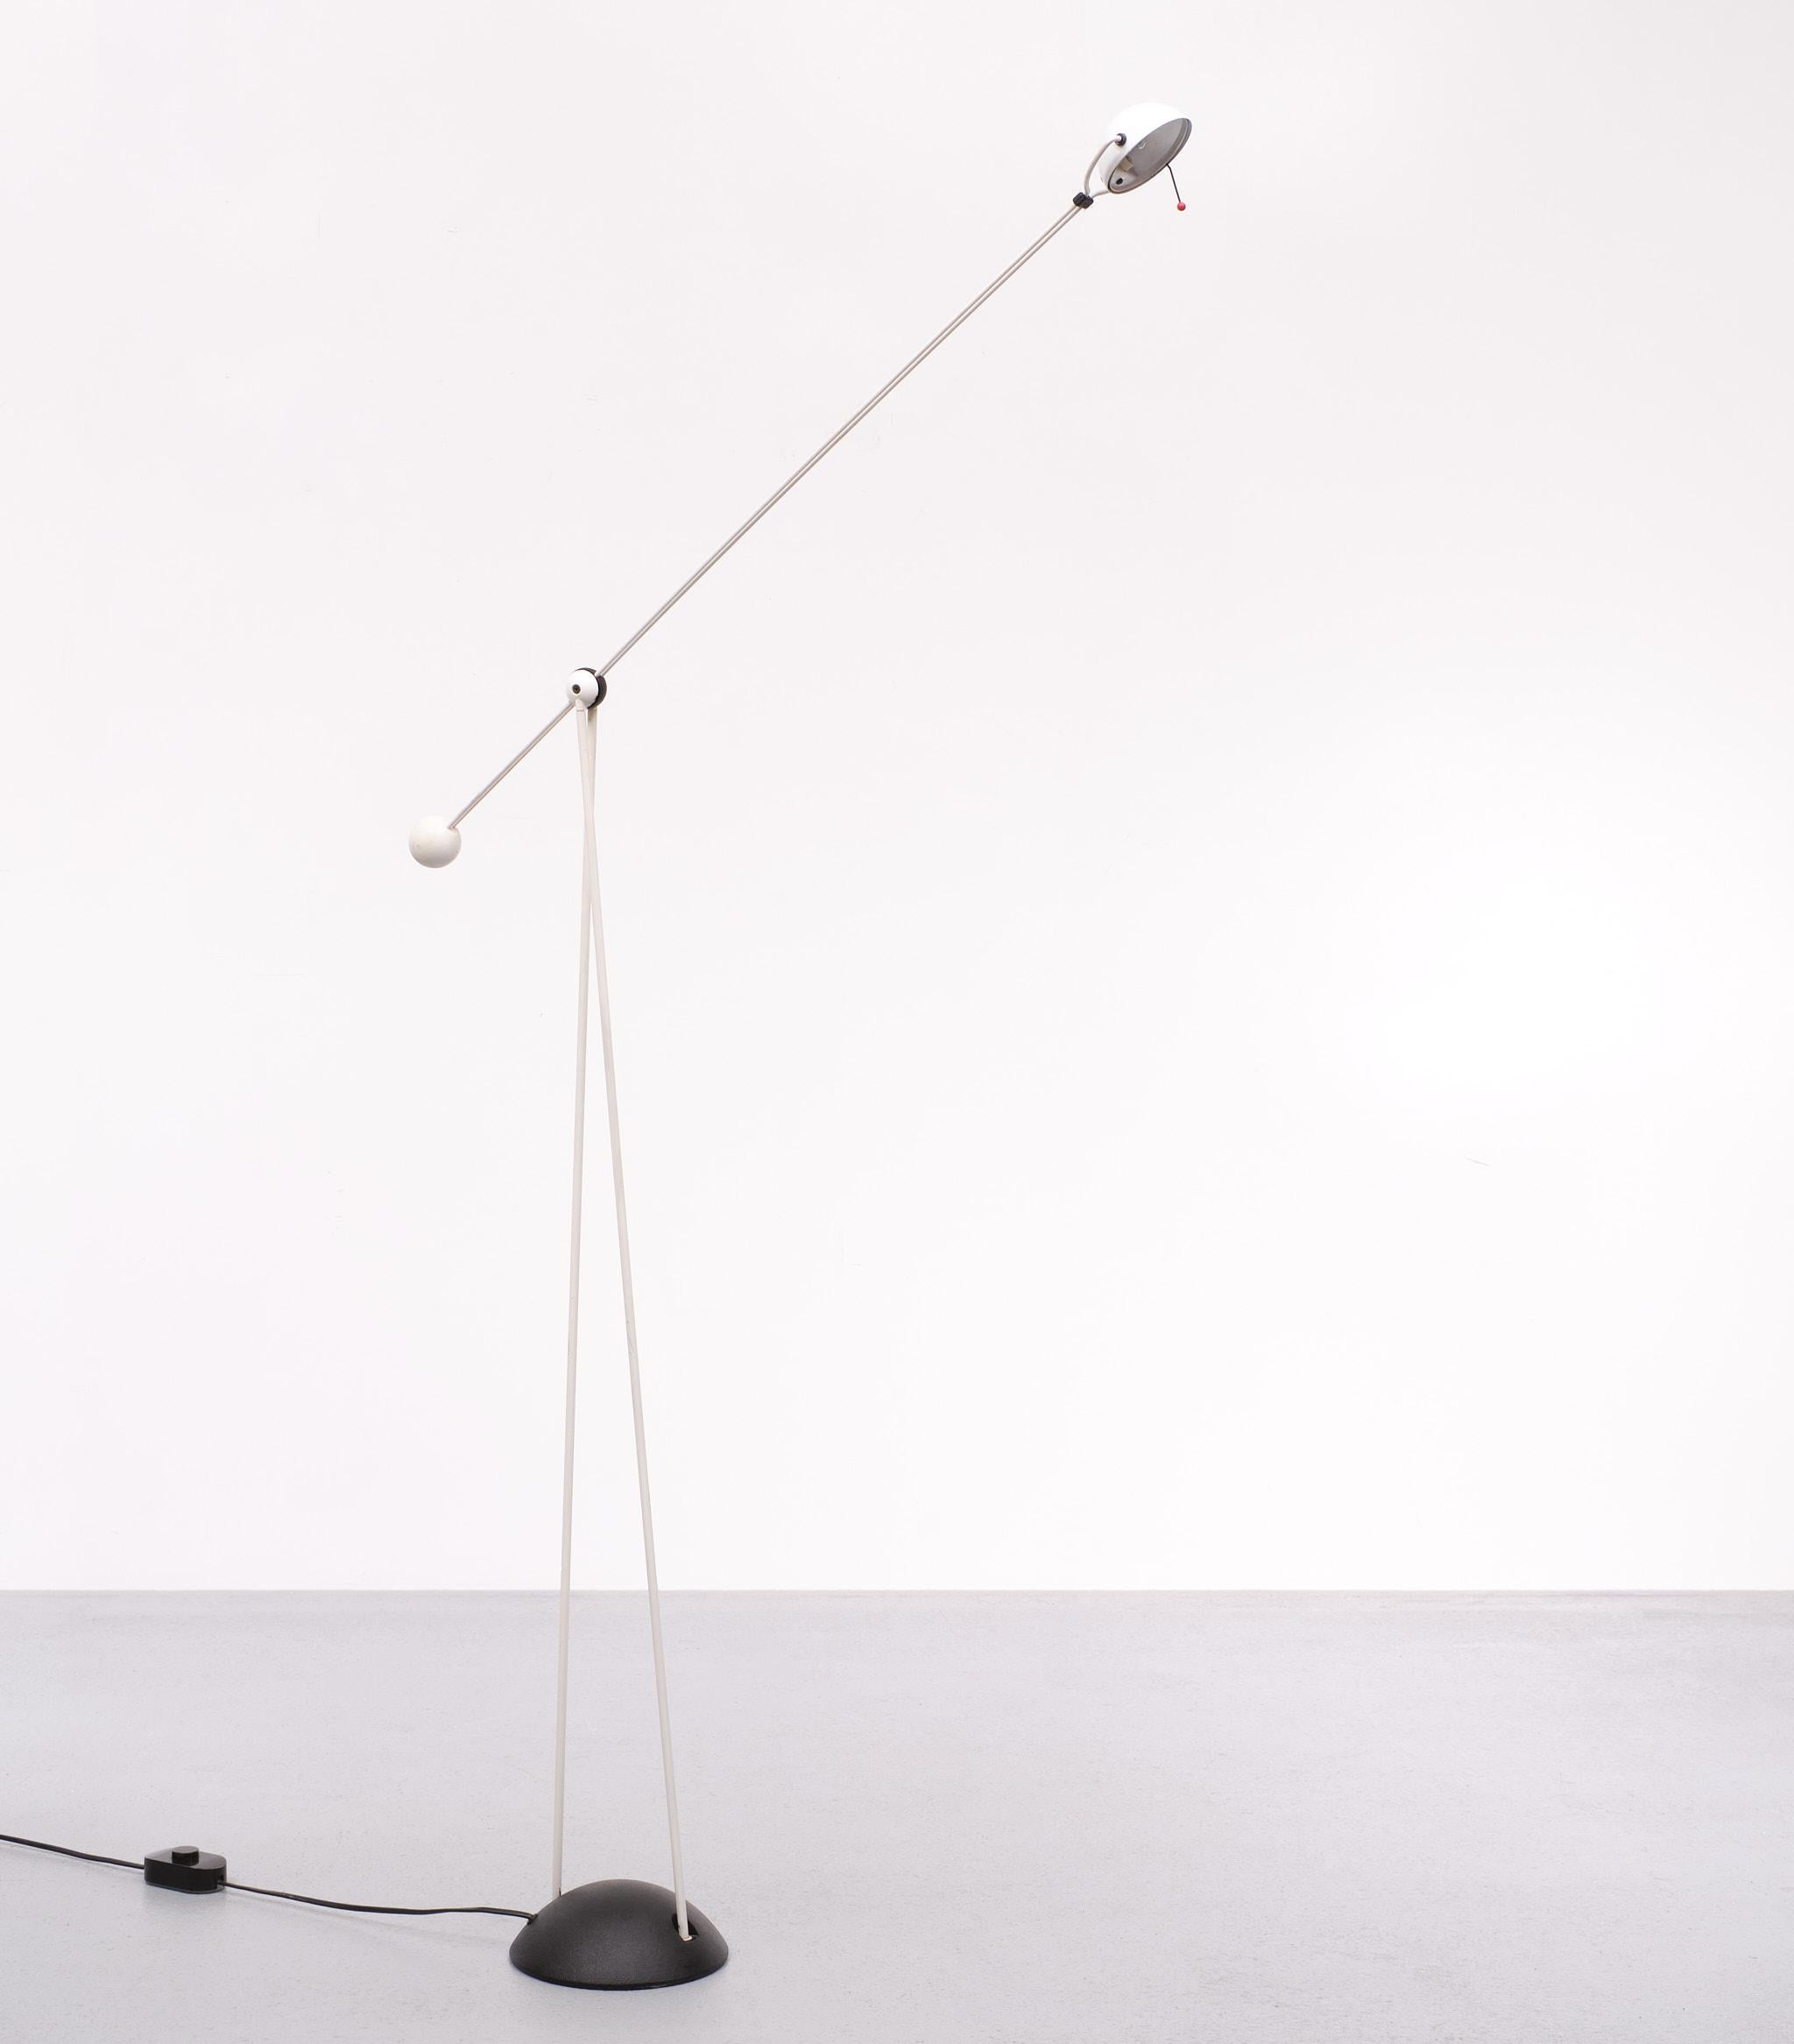 In den 1980er Jahren von Stefano Cevoli nach einem Entwurf von Paolo Francesco Piva hergestellte Lampe. Modell Yuki Halbkugelförmiger Sockel aus schwarz lackiertem Metall. Doppelte Stange aus schwarz lackiertem Metall, die sich mit einer anderen